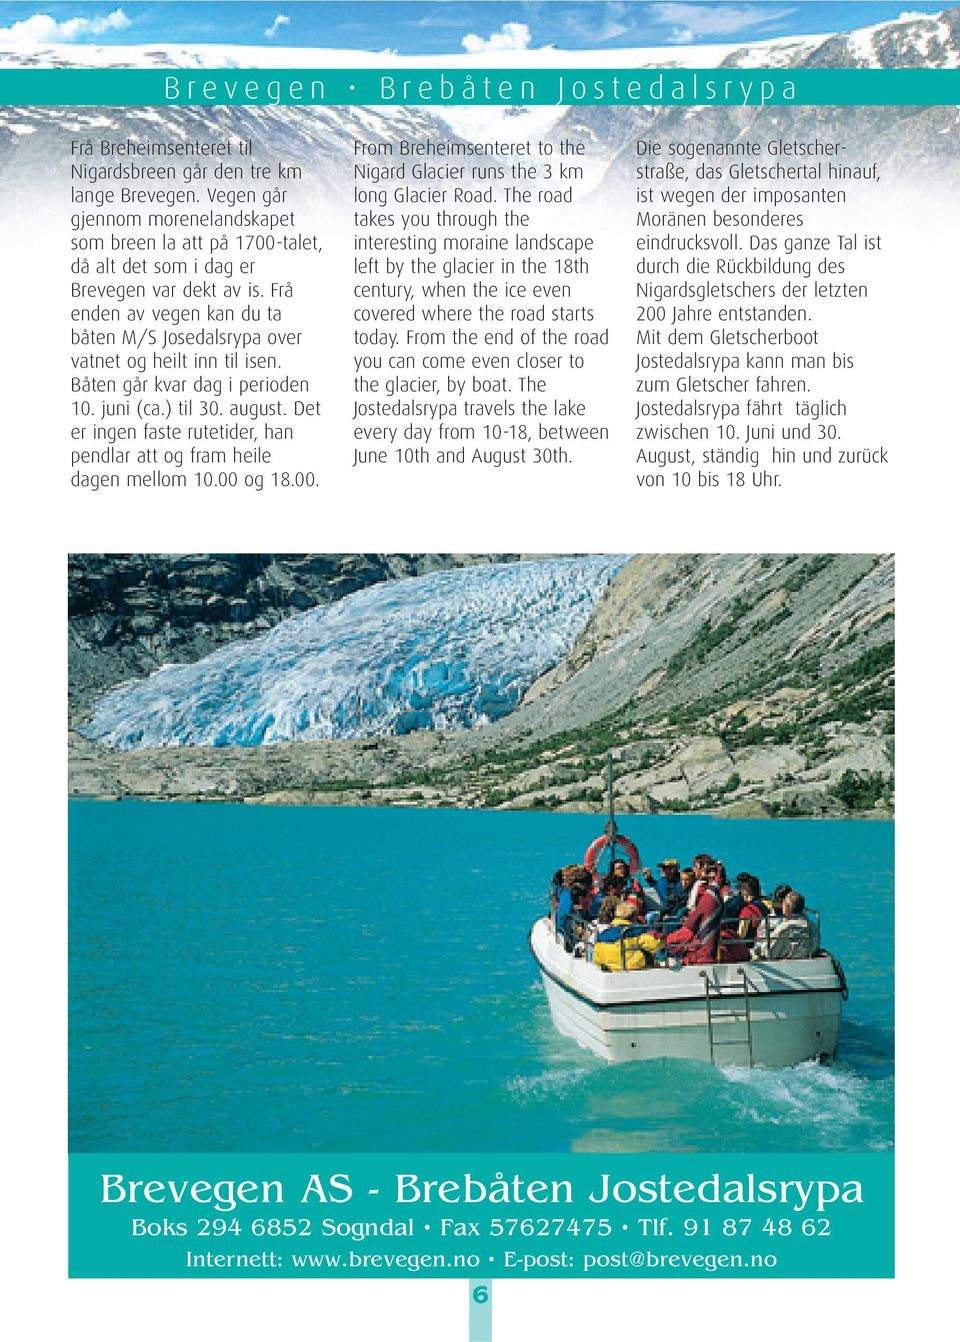 Frå enden av vegen kan du ta båten M/S Josedalsrypa over vatnet og heilt inn til isen. Båten går kvar dag i perioden 10. juni (ca.) til 30. august.